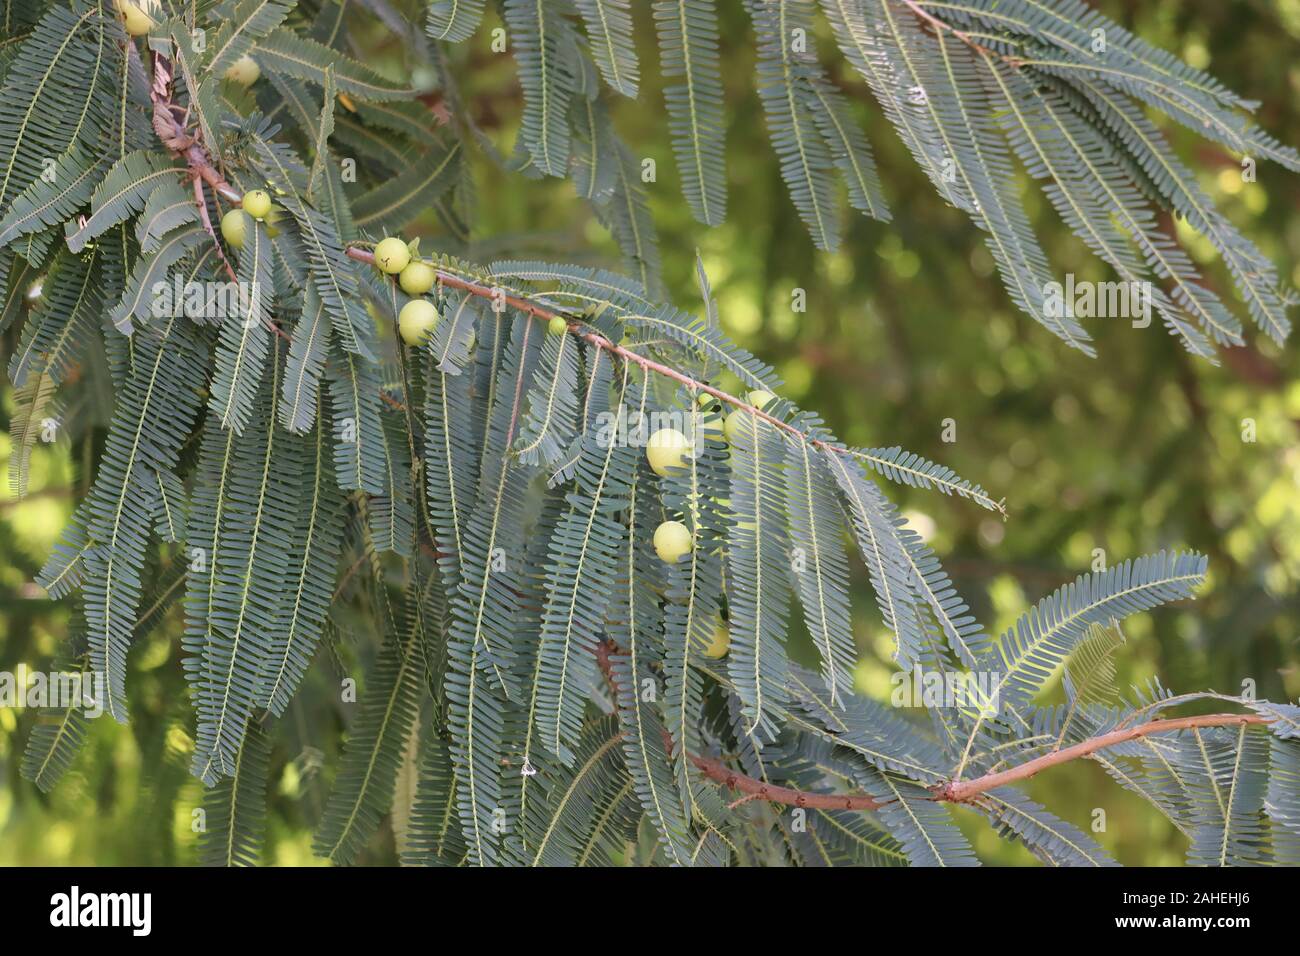 Blick auf frischen grünen indischen Stachelbeeren auf einem Zweig von stachelbeeren Busch im Garten. Nahaufnahme der organischen Stachelbeere berry hängt an einem Ast Stockfoto